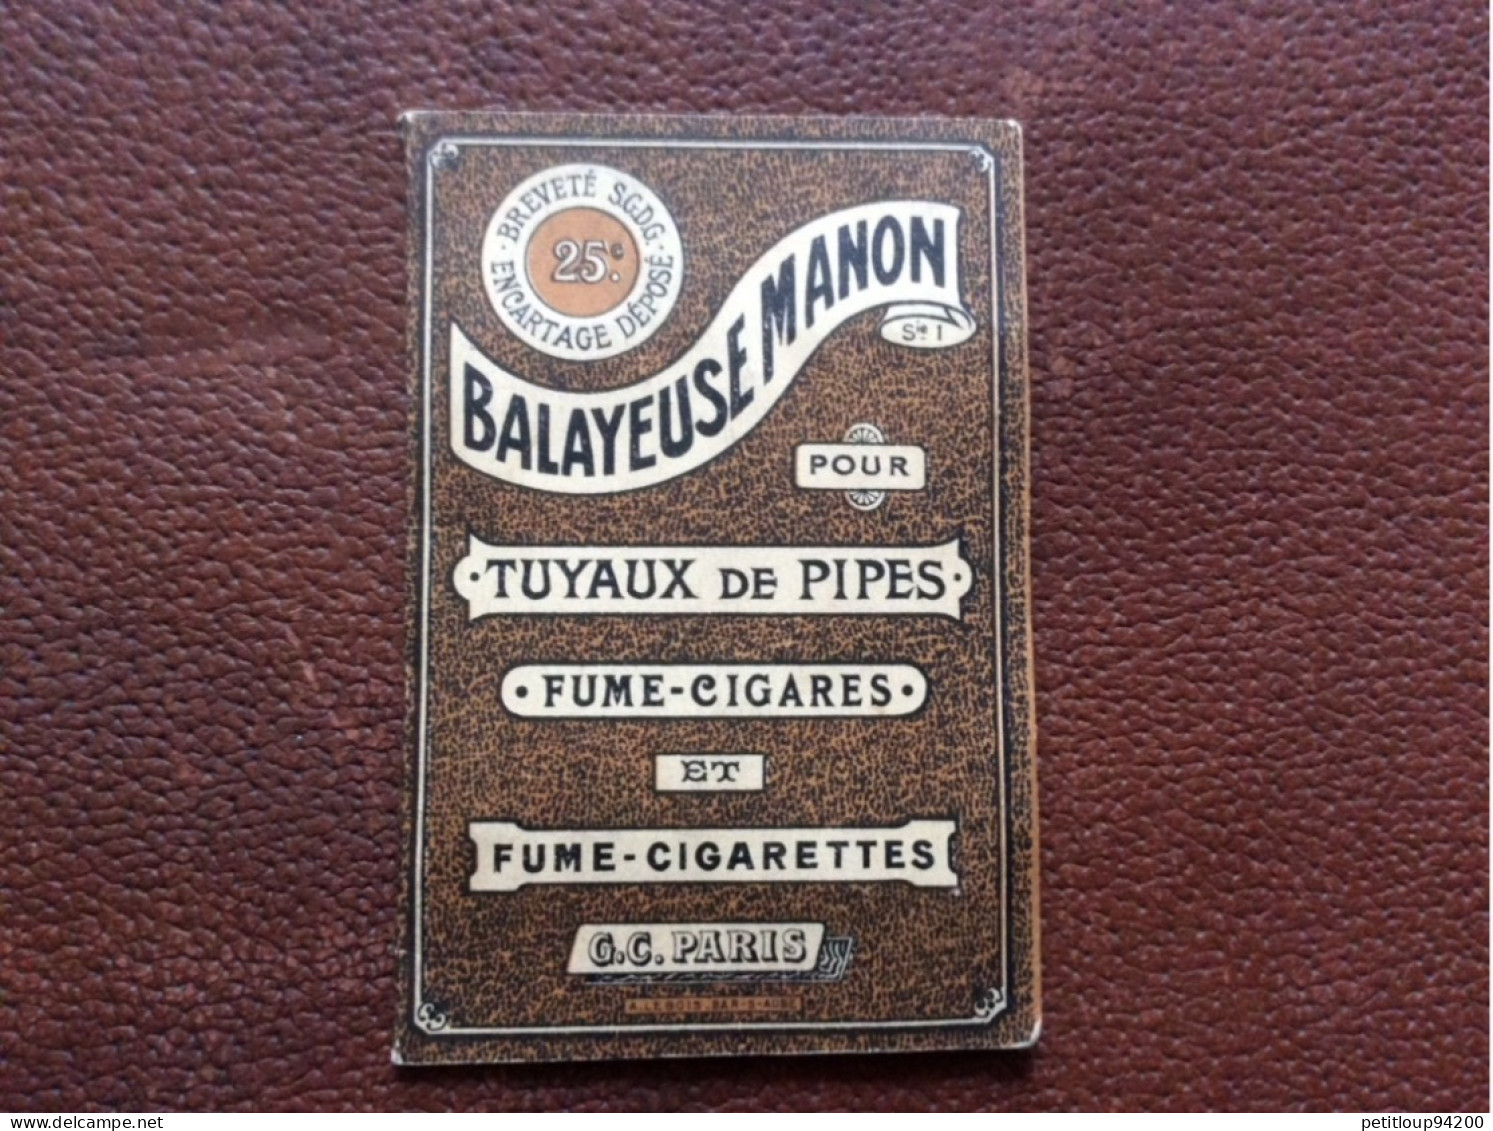 BALAYEUSE MANON  Tuyaux De Pipes  Fume-Cigares  Fume-Cigarettes  G.C  Paris  A.LEBOIS  Bar-s-Aube - Non Classificati